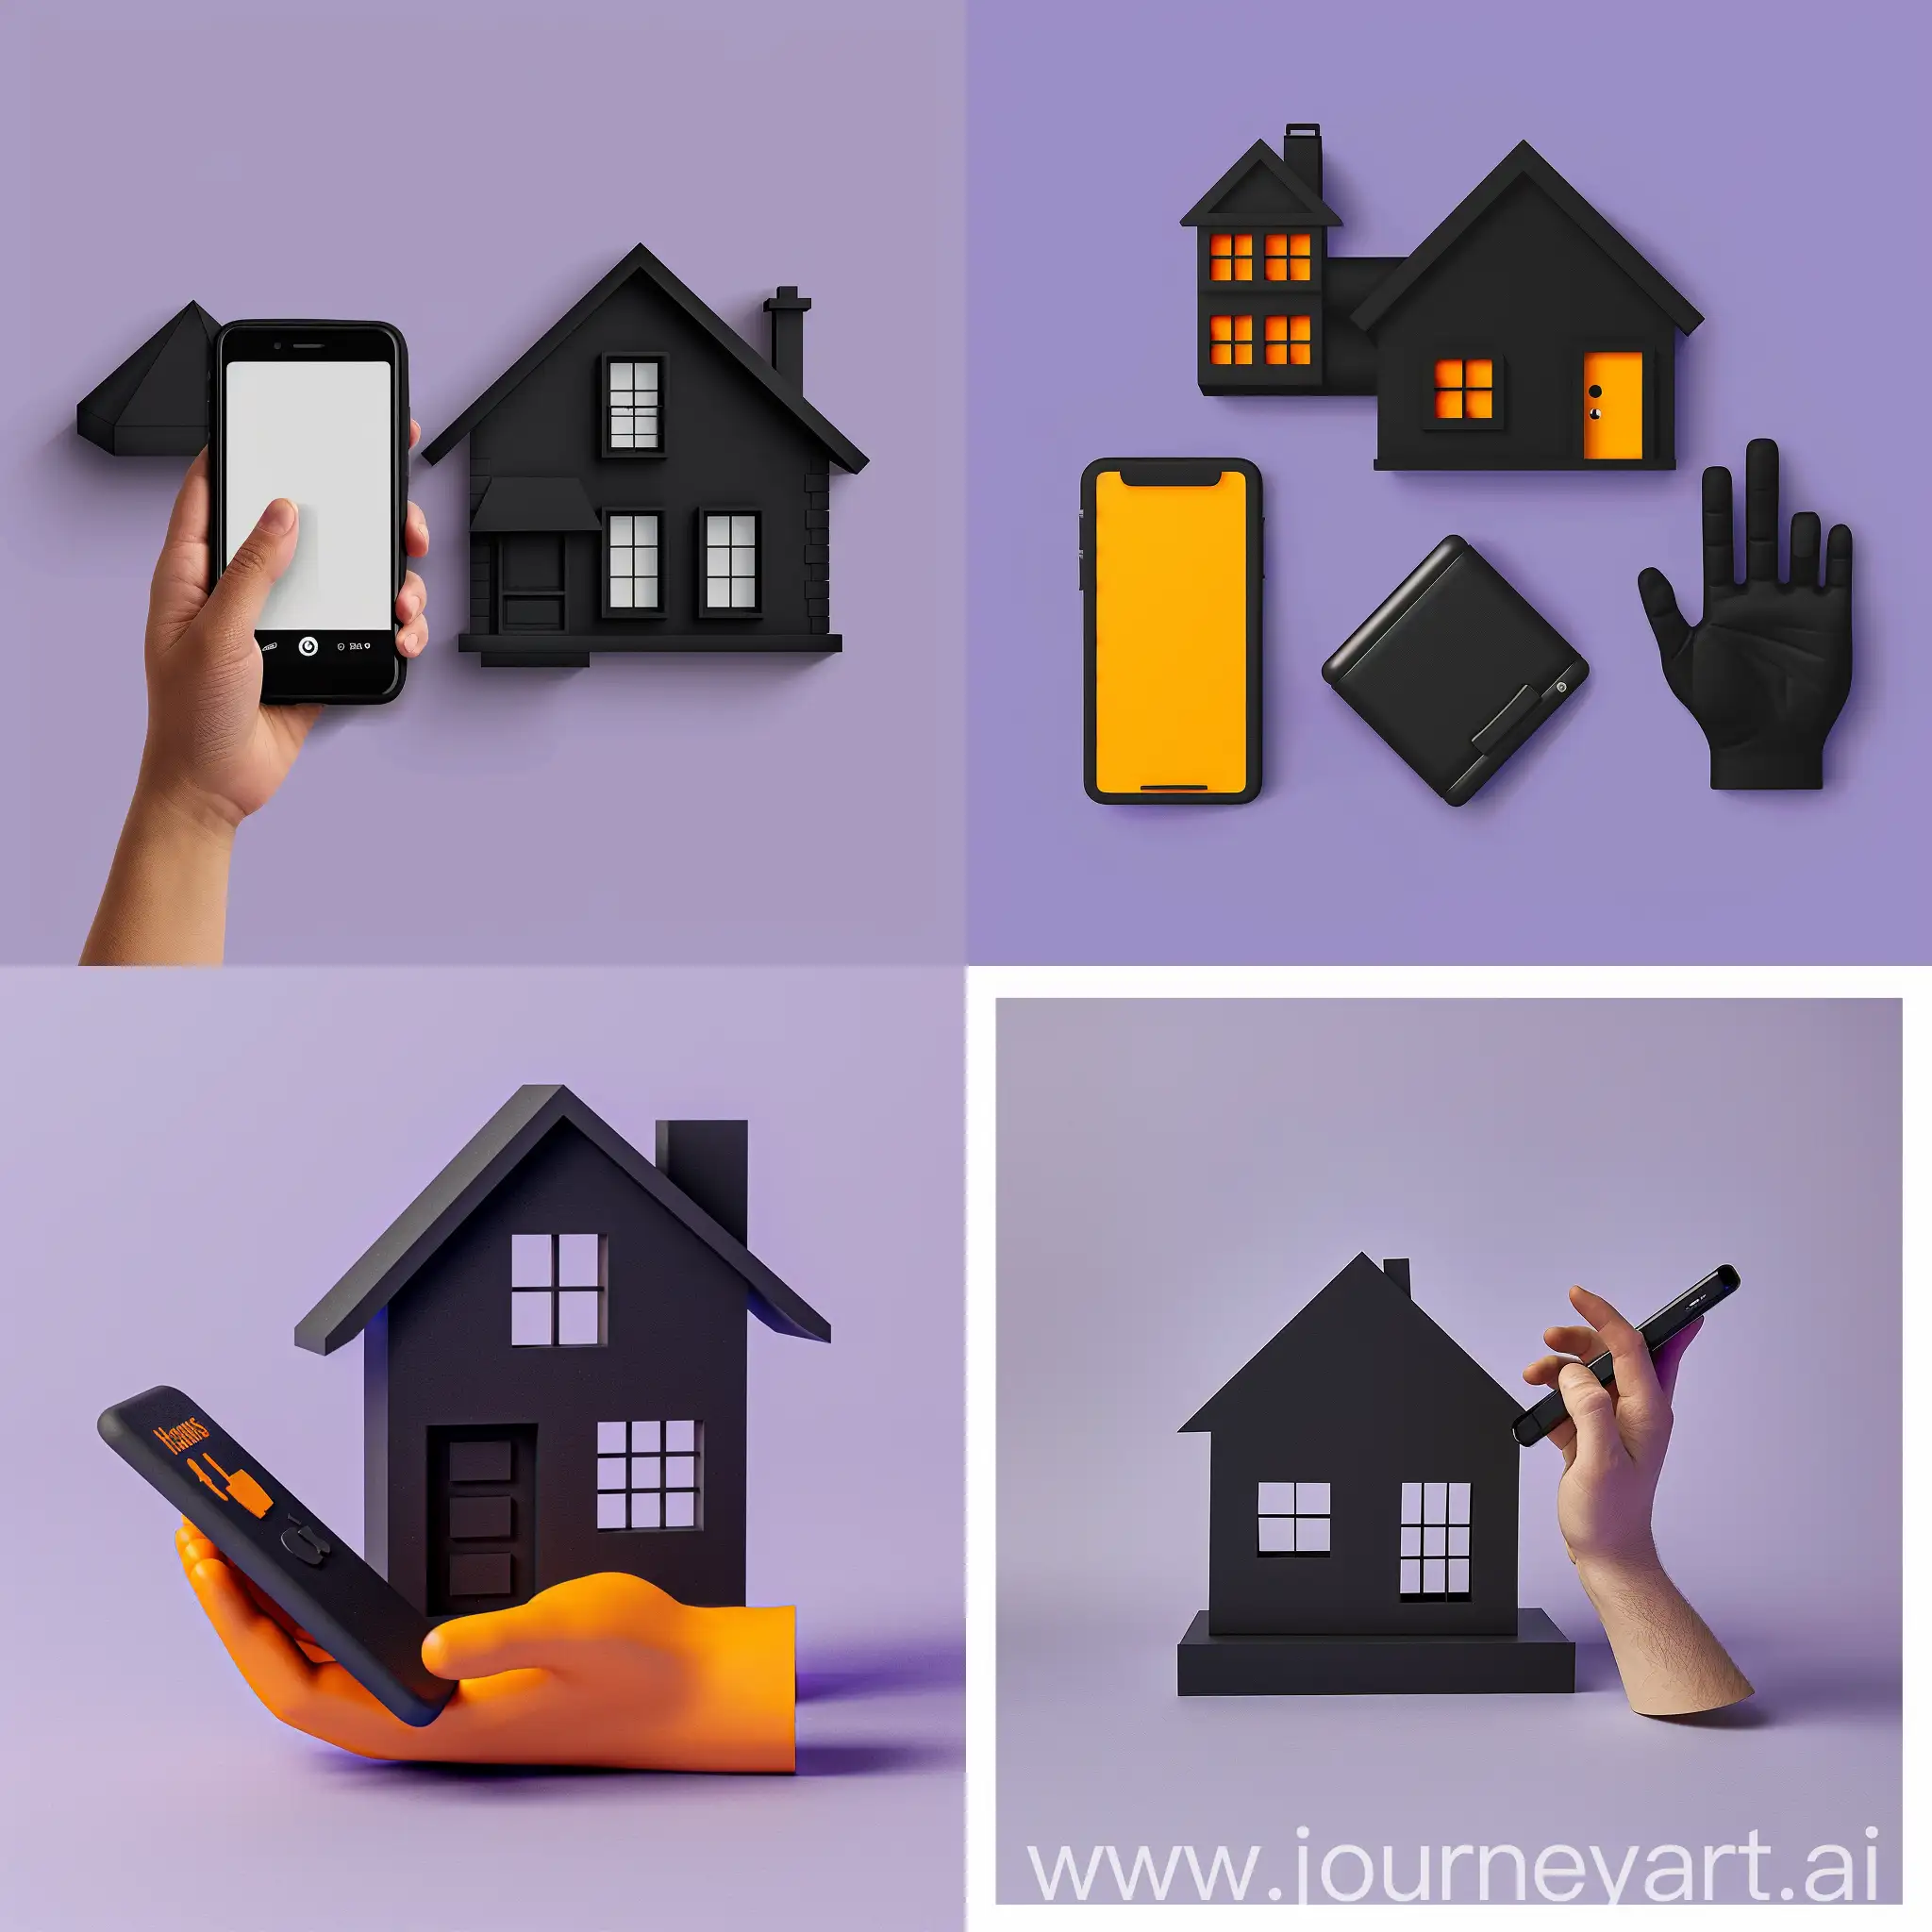 логотип на фиолетовом фон 2d дома черного цвета, обьемная фигура 3 параллелипепеда, и конткурный рисунок рука с телефоном